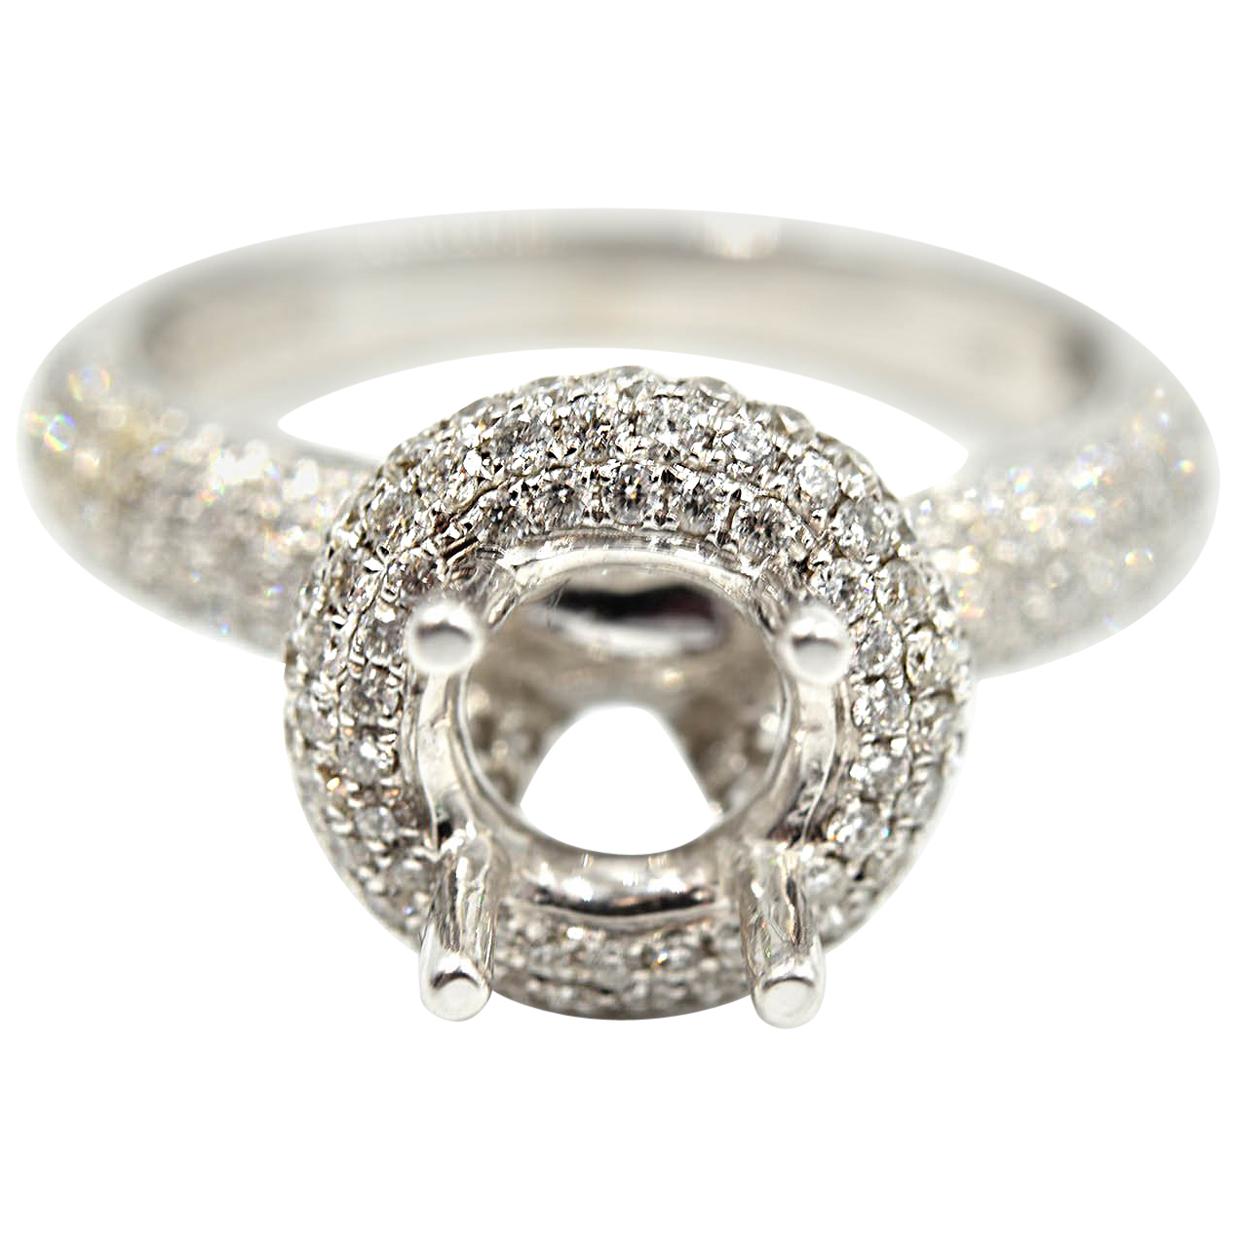 1.11 Carat Diamond 18 Karat White Gold Semi-Mount Engagement Ring